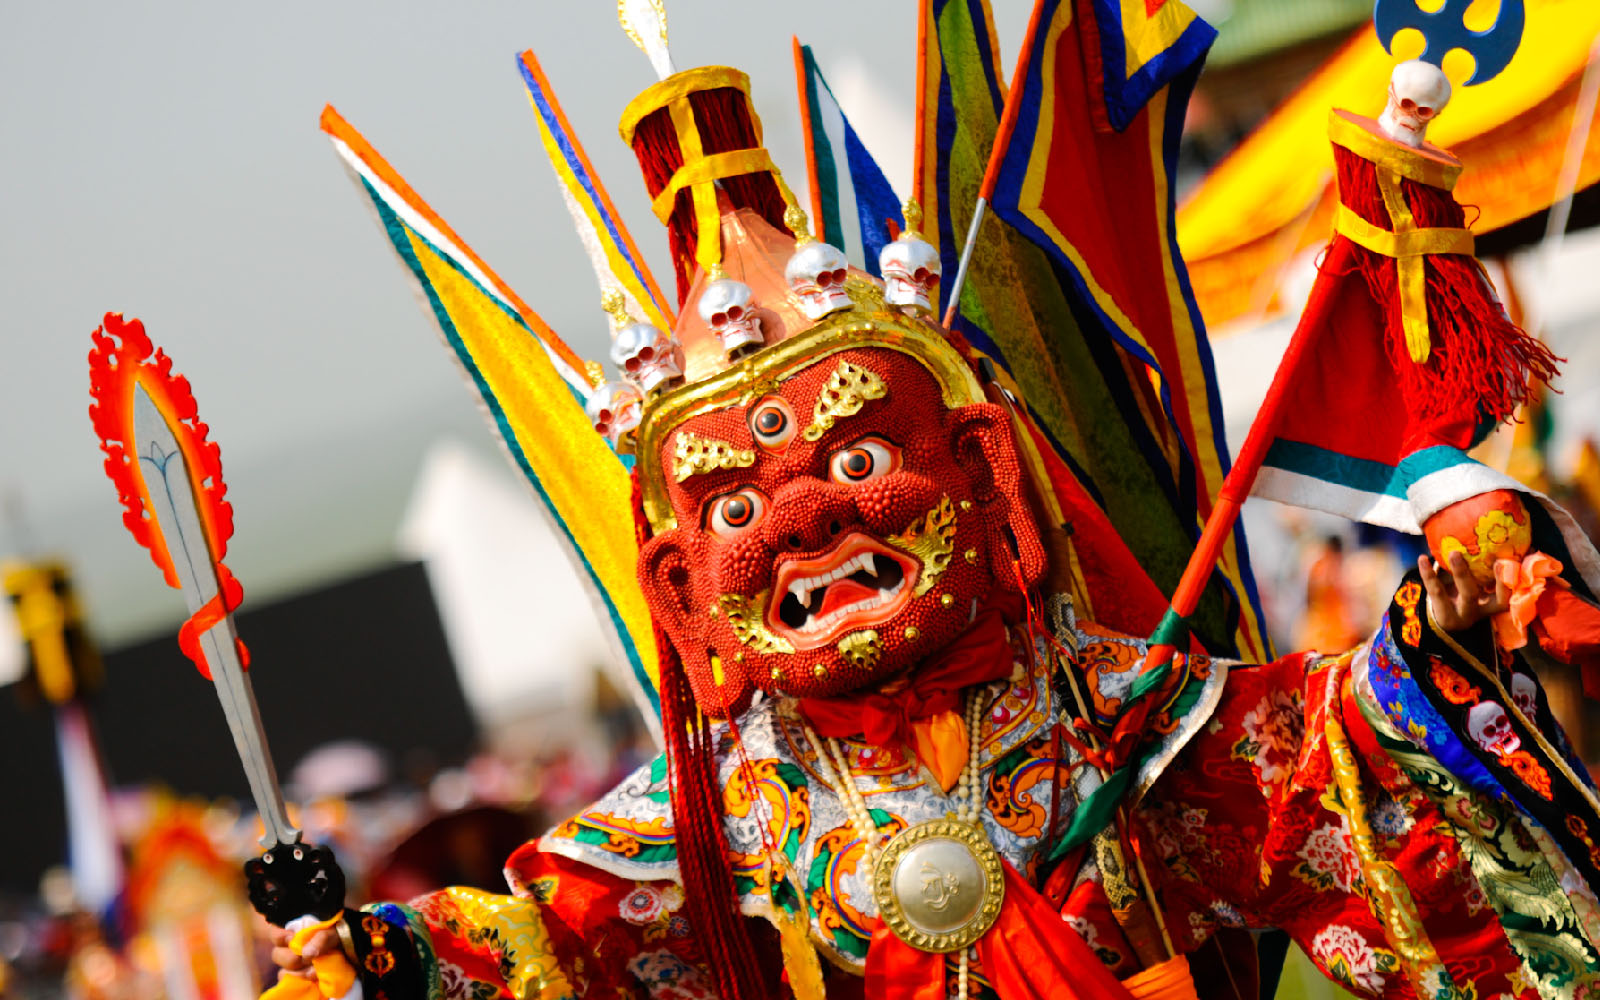 蒙古传统佛教节日“丹喜格”。